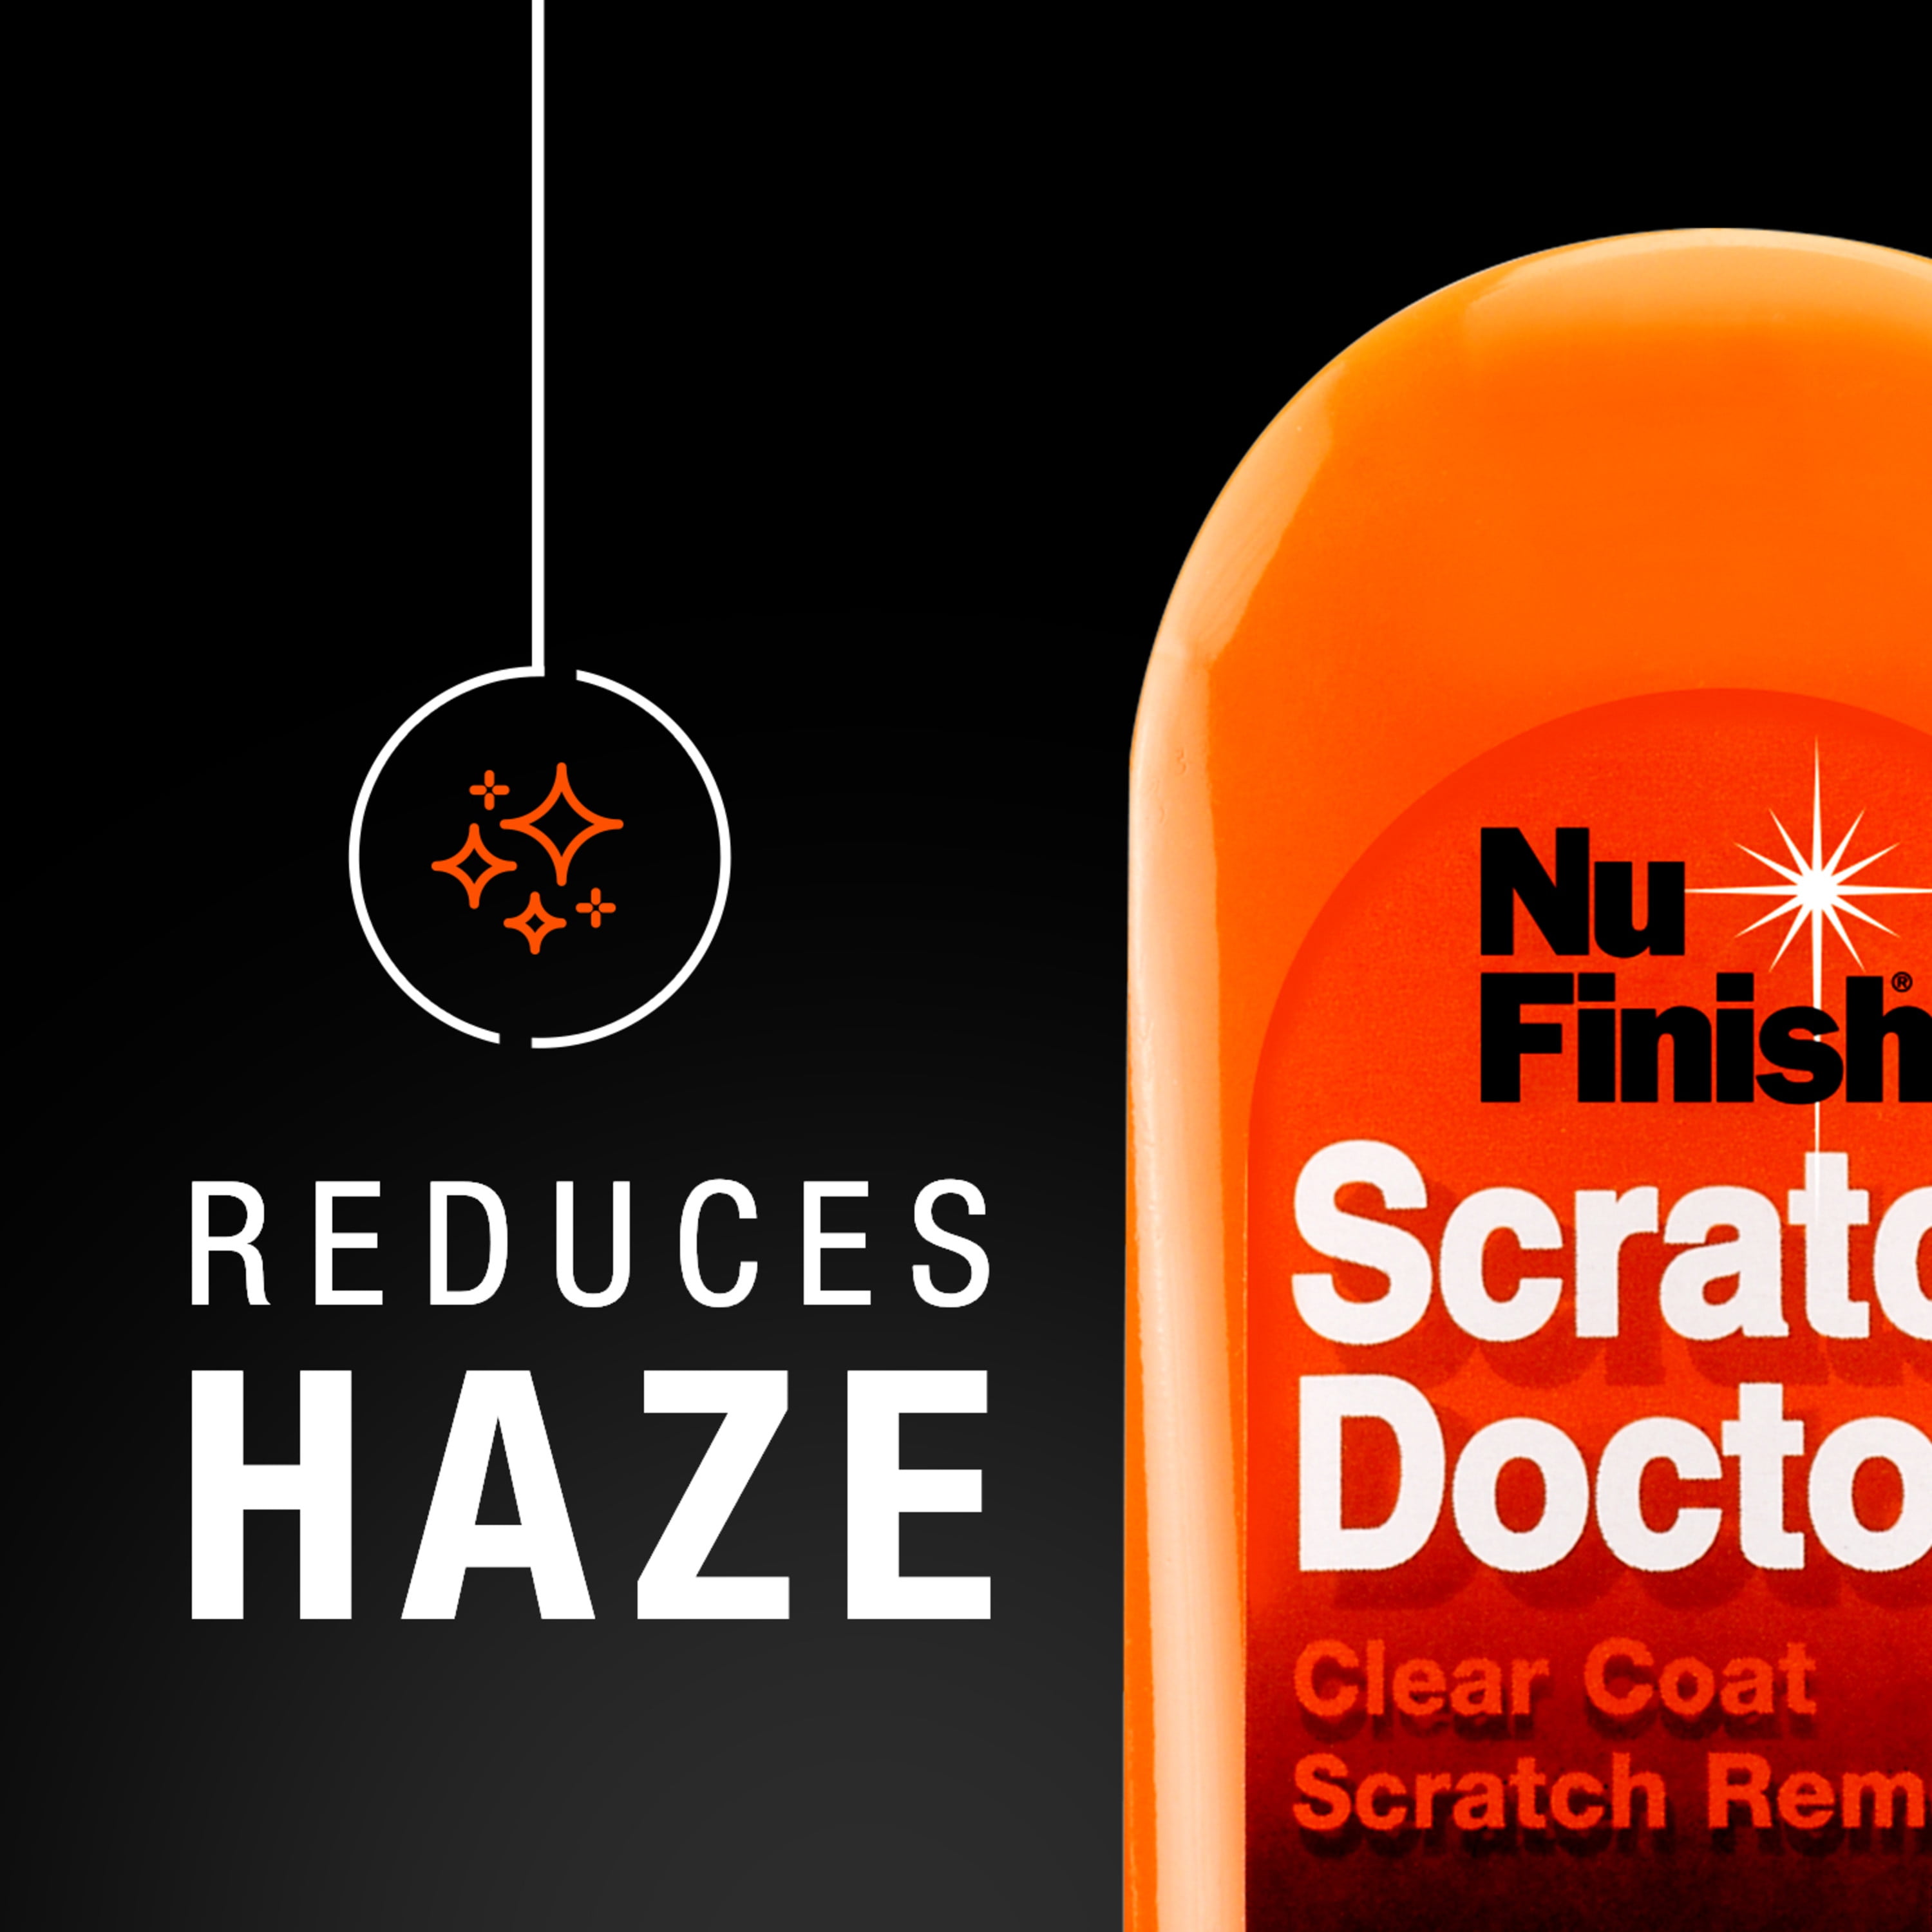 Nu Finish Scratch Doctor Car Scratch Remover - 6.5 OZ